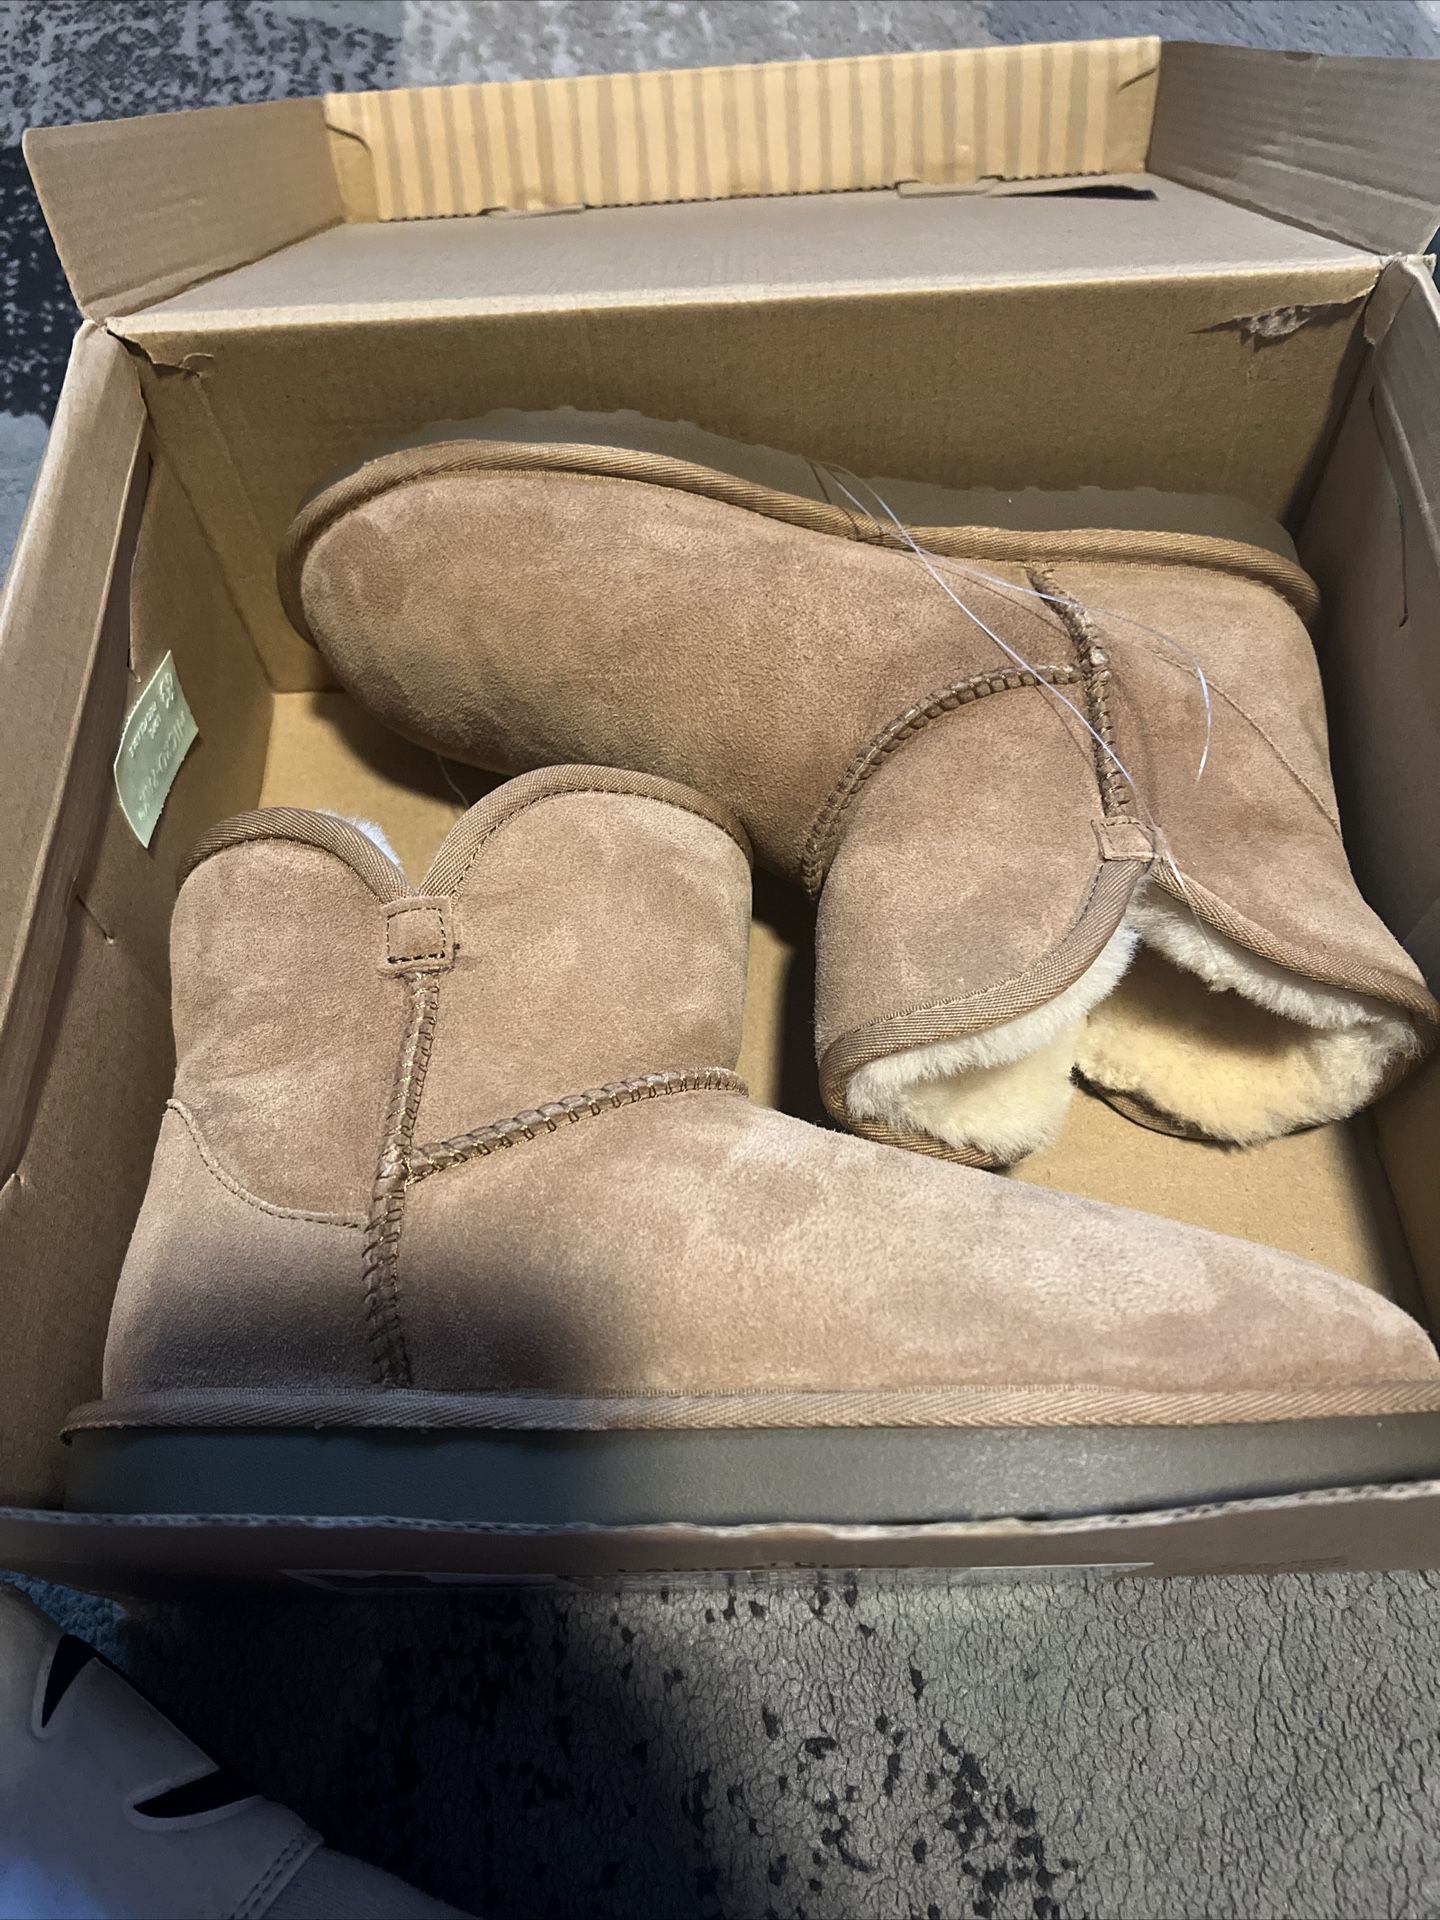 BRAND NEW!!!Kirkland brand Women's boots size 8 